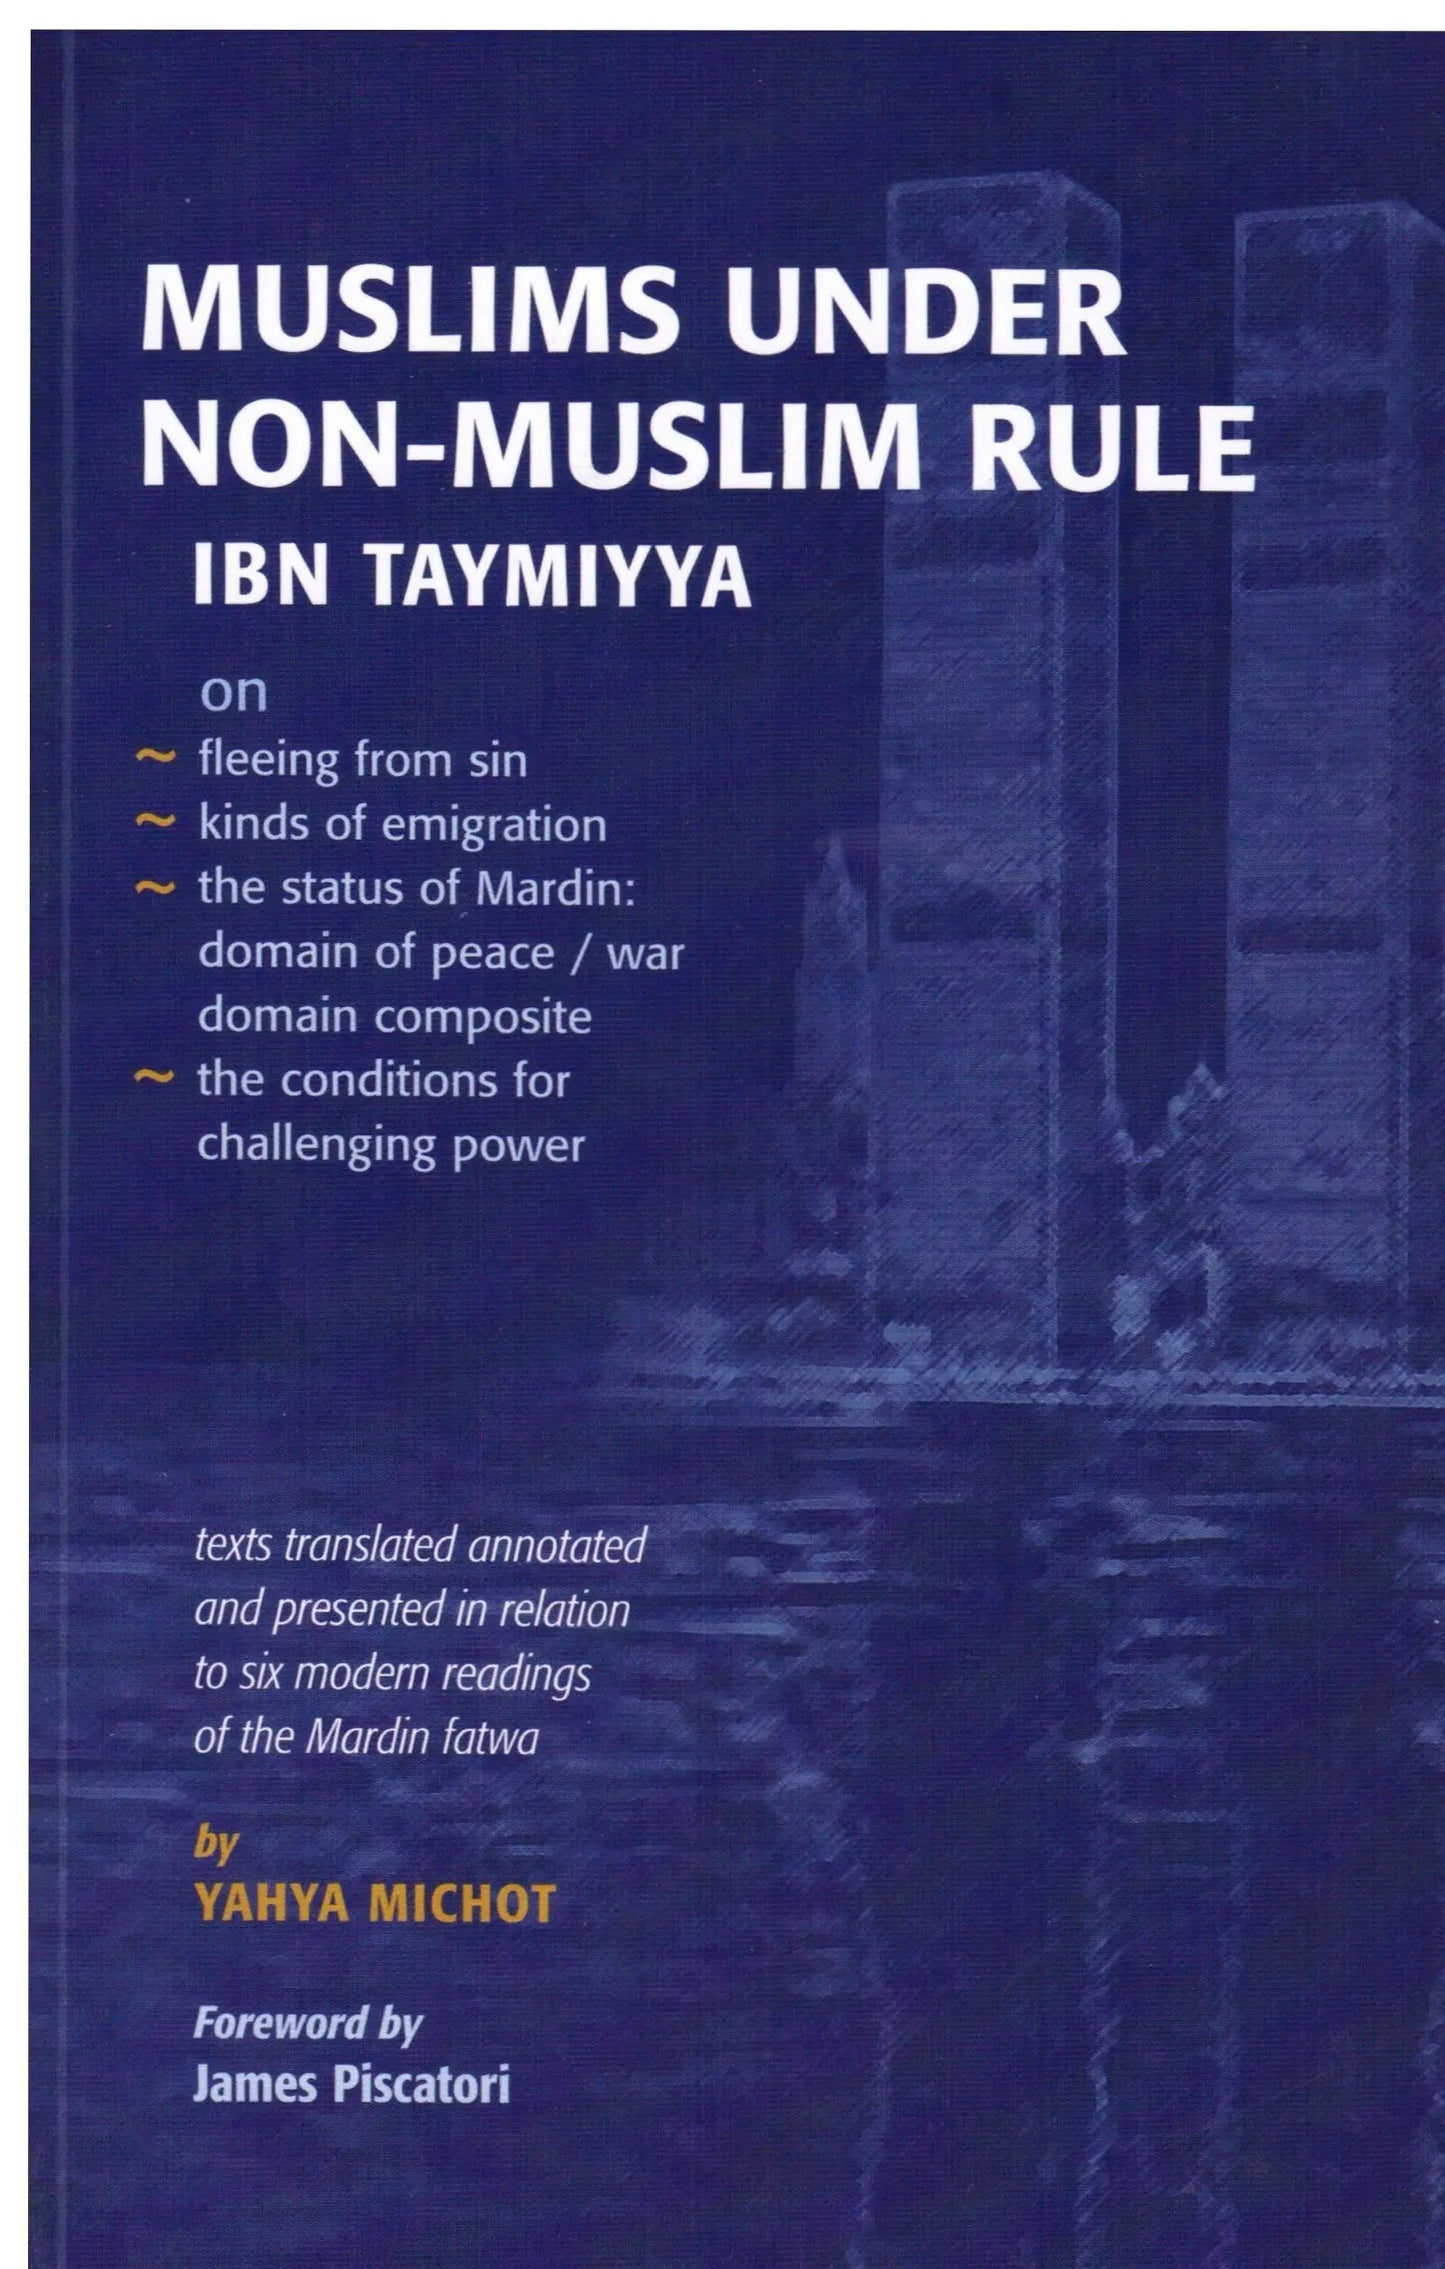 Ibn Taymiyya: Muslims Under Non-Muslim Rule